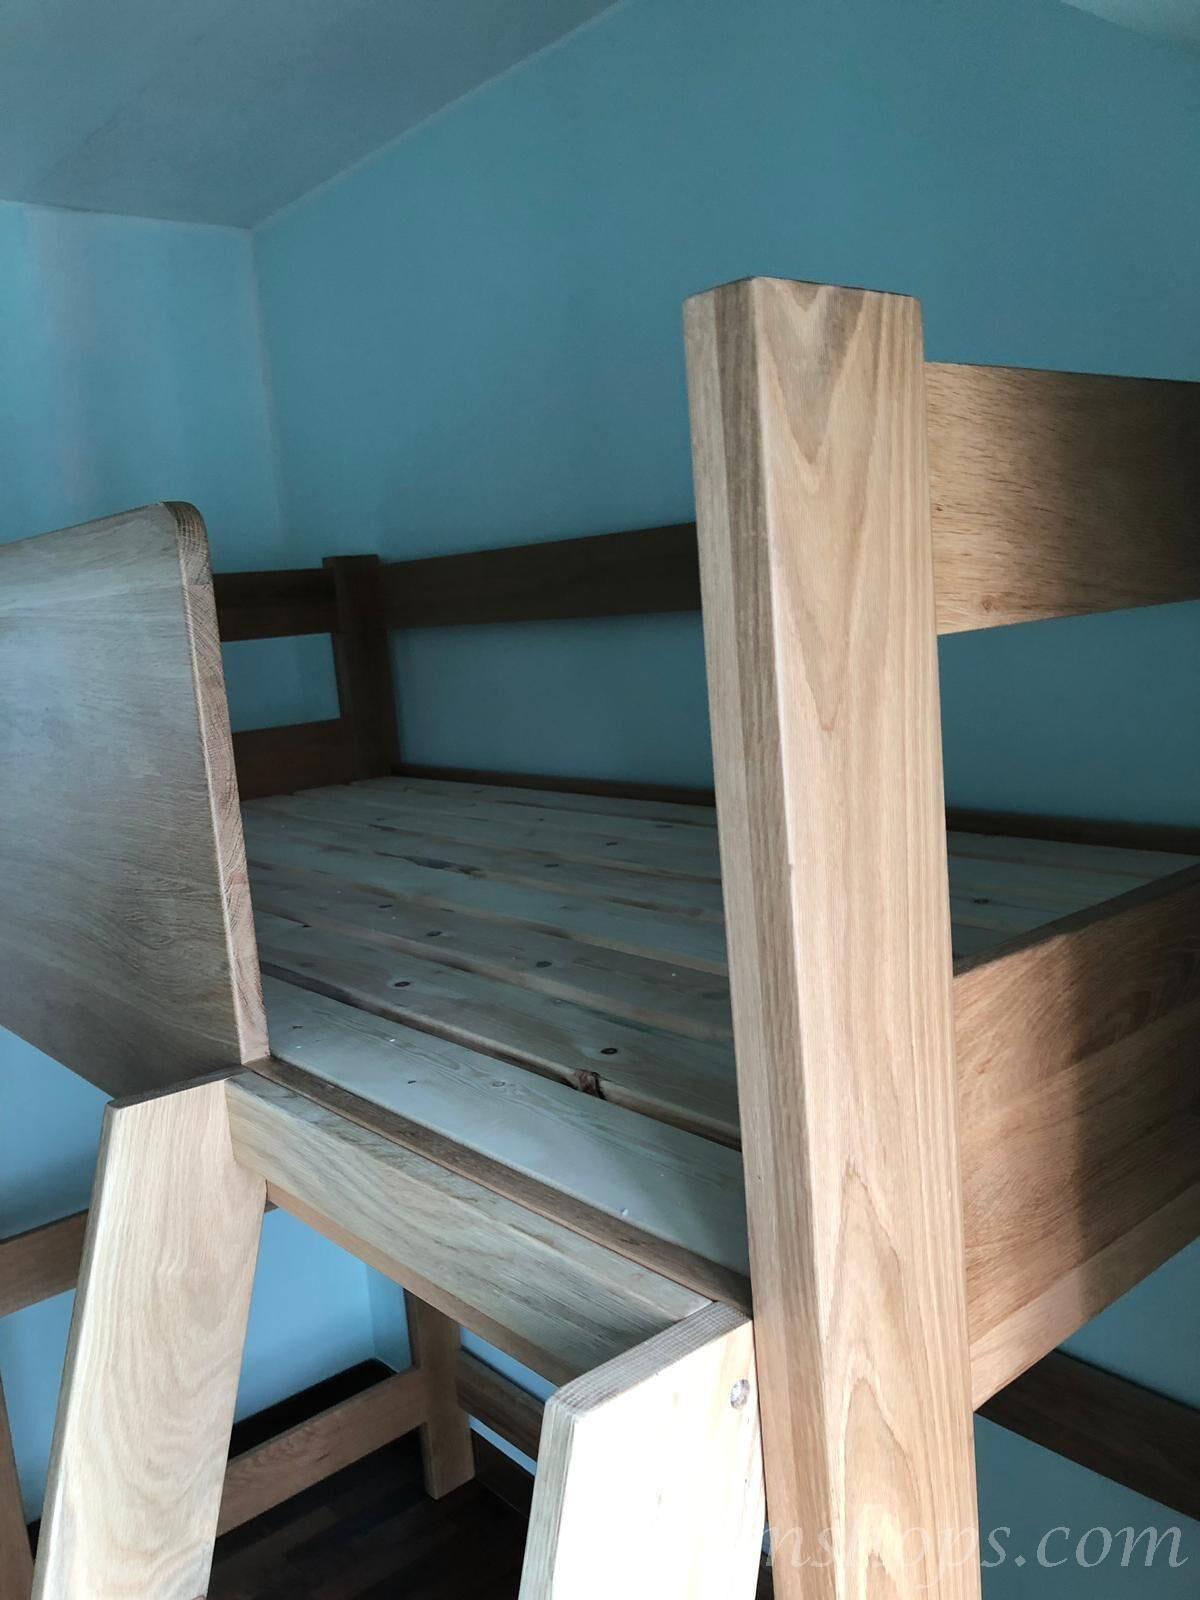 北歐實木系列 白橡木高架床*可訂造呎吋 (不包床褥)(IS6043)